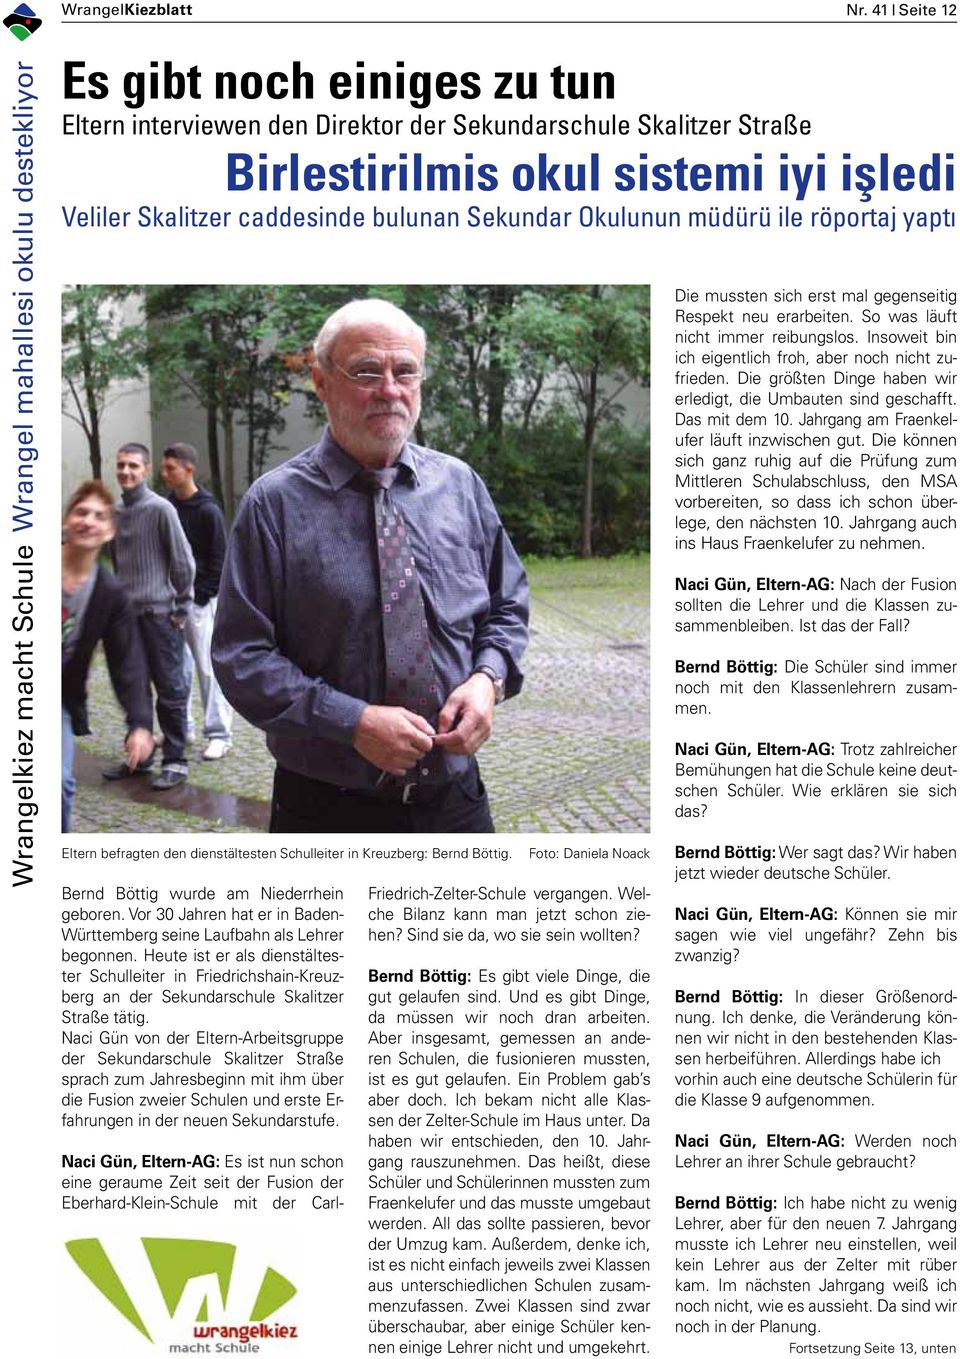 iyi işledi Veliler Skalitzer caddesinde bulunan Sekundar Okulunun müdürü ile röportaj yaptı Eltern befragten den dienstältesten Schulleiter in Kreuzberg: Bernd Böttig.